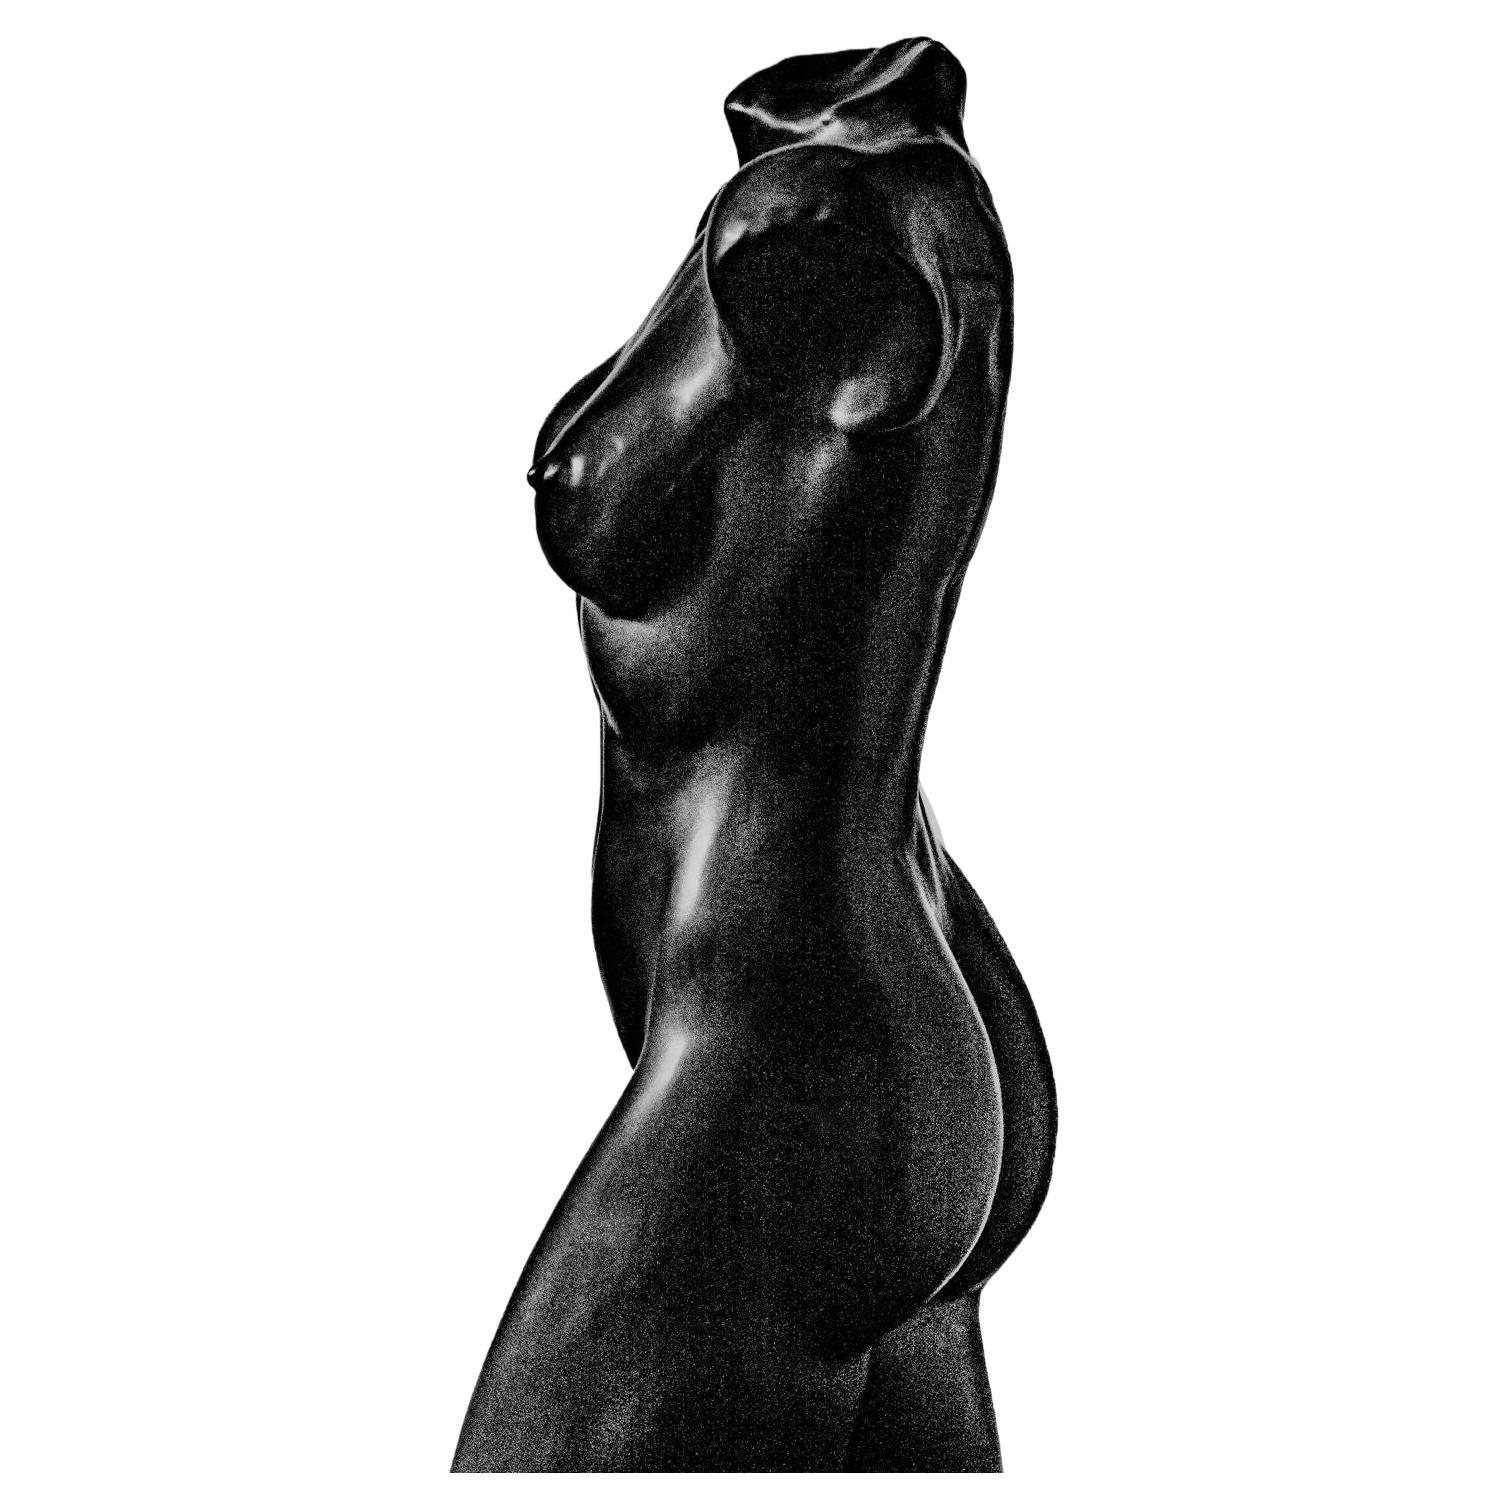 Ein faszinierendes handgefertigtes skulpturales Werk, das die weibliche Schönheit feiert. nur